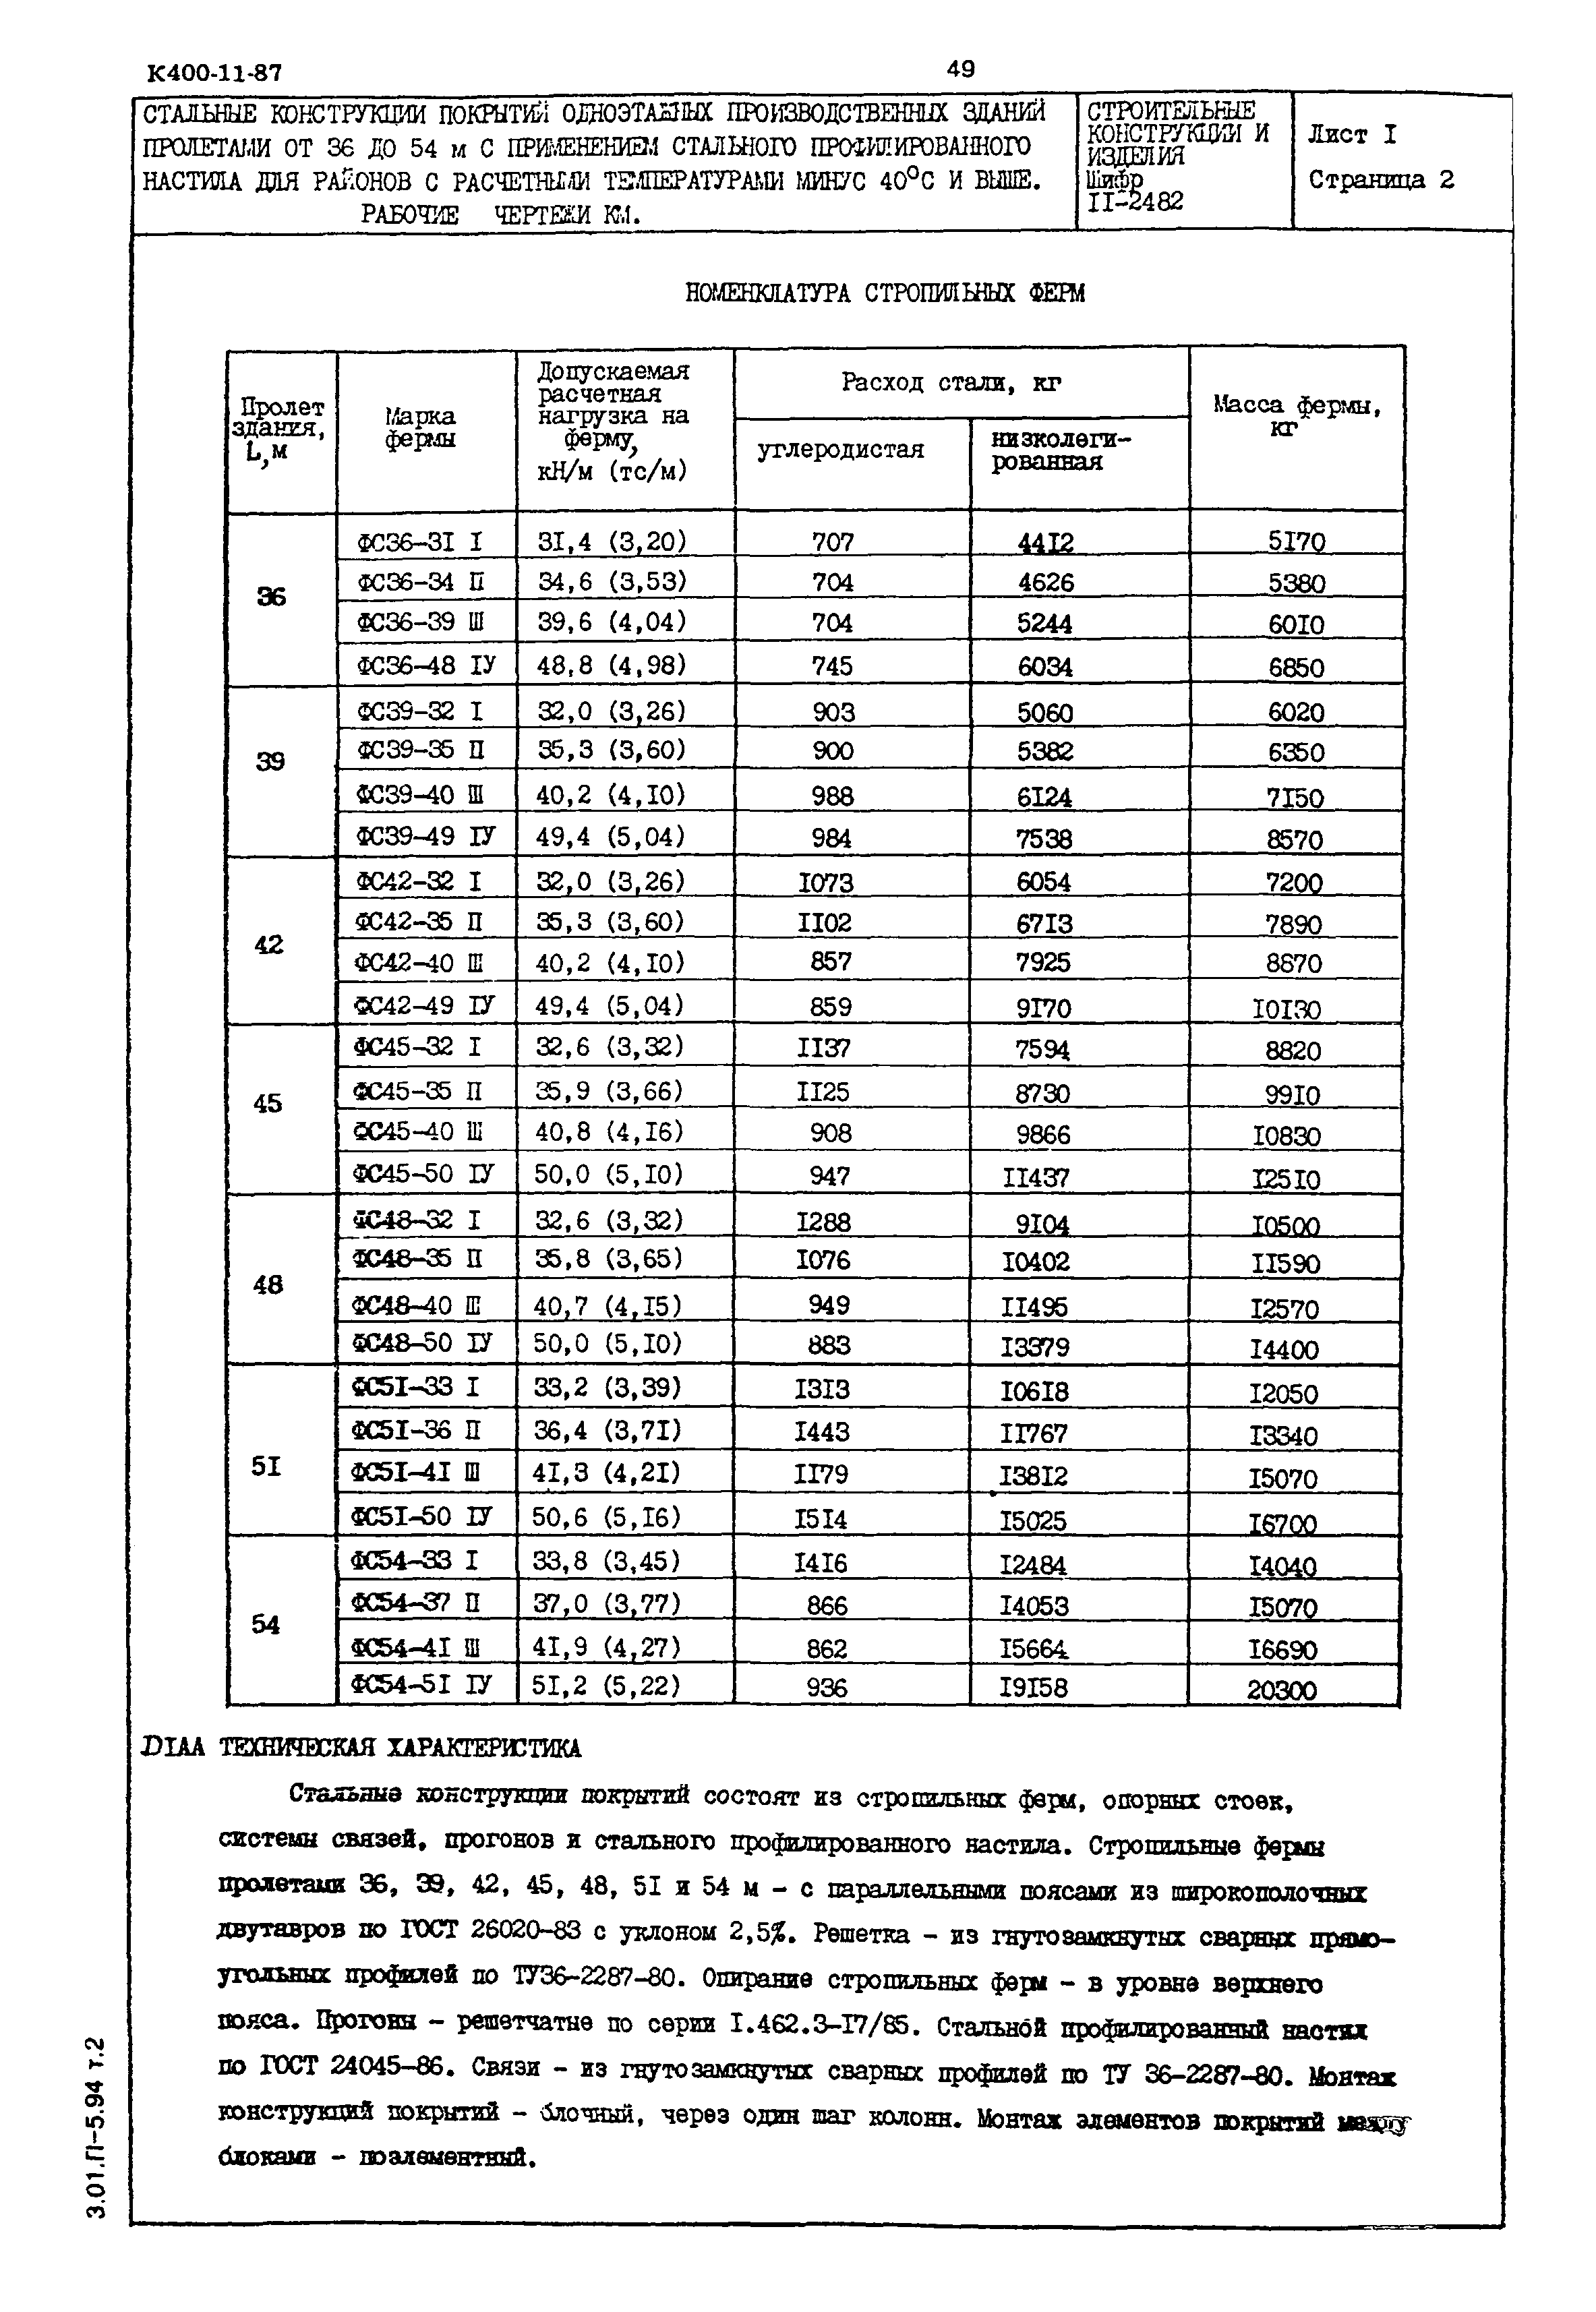 Шифр 11-2482